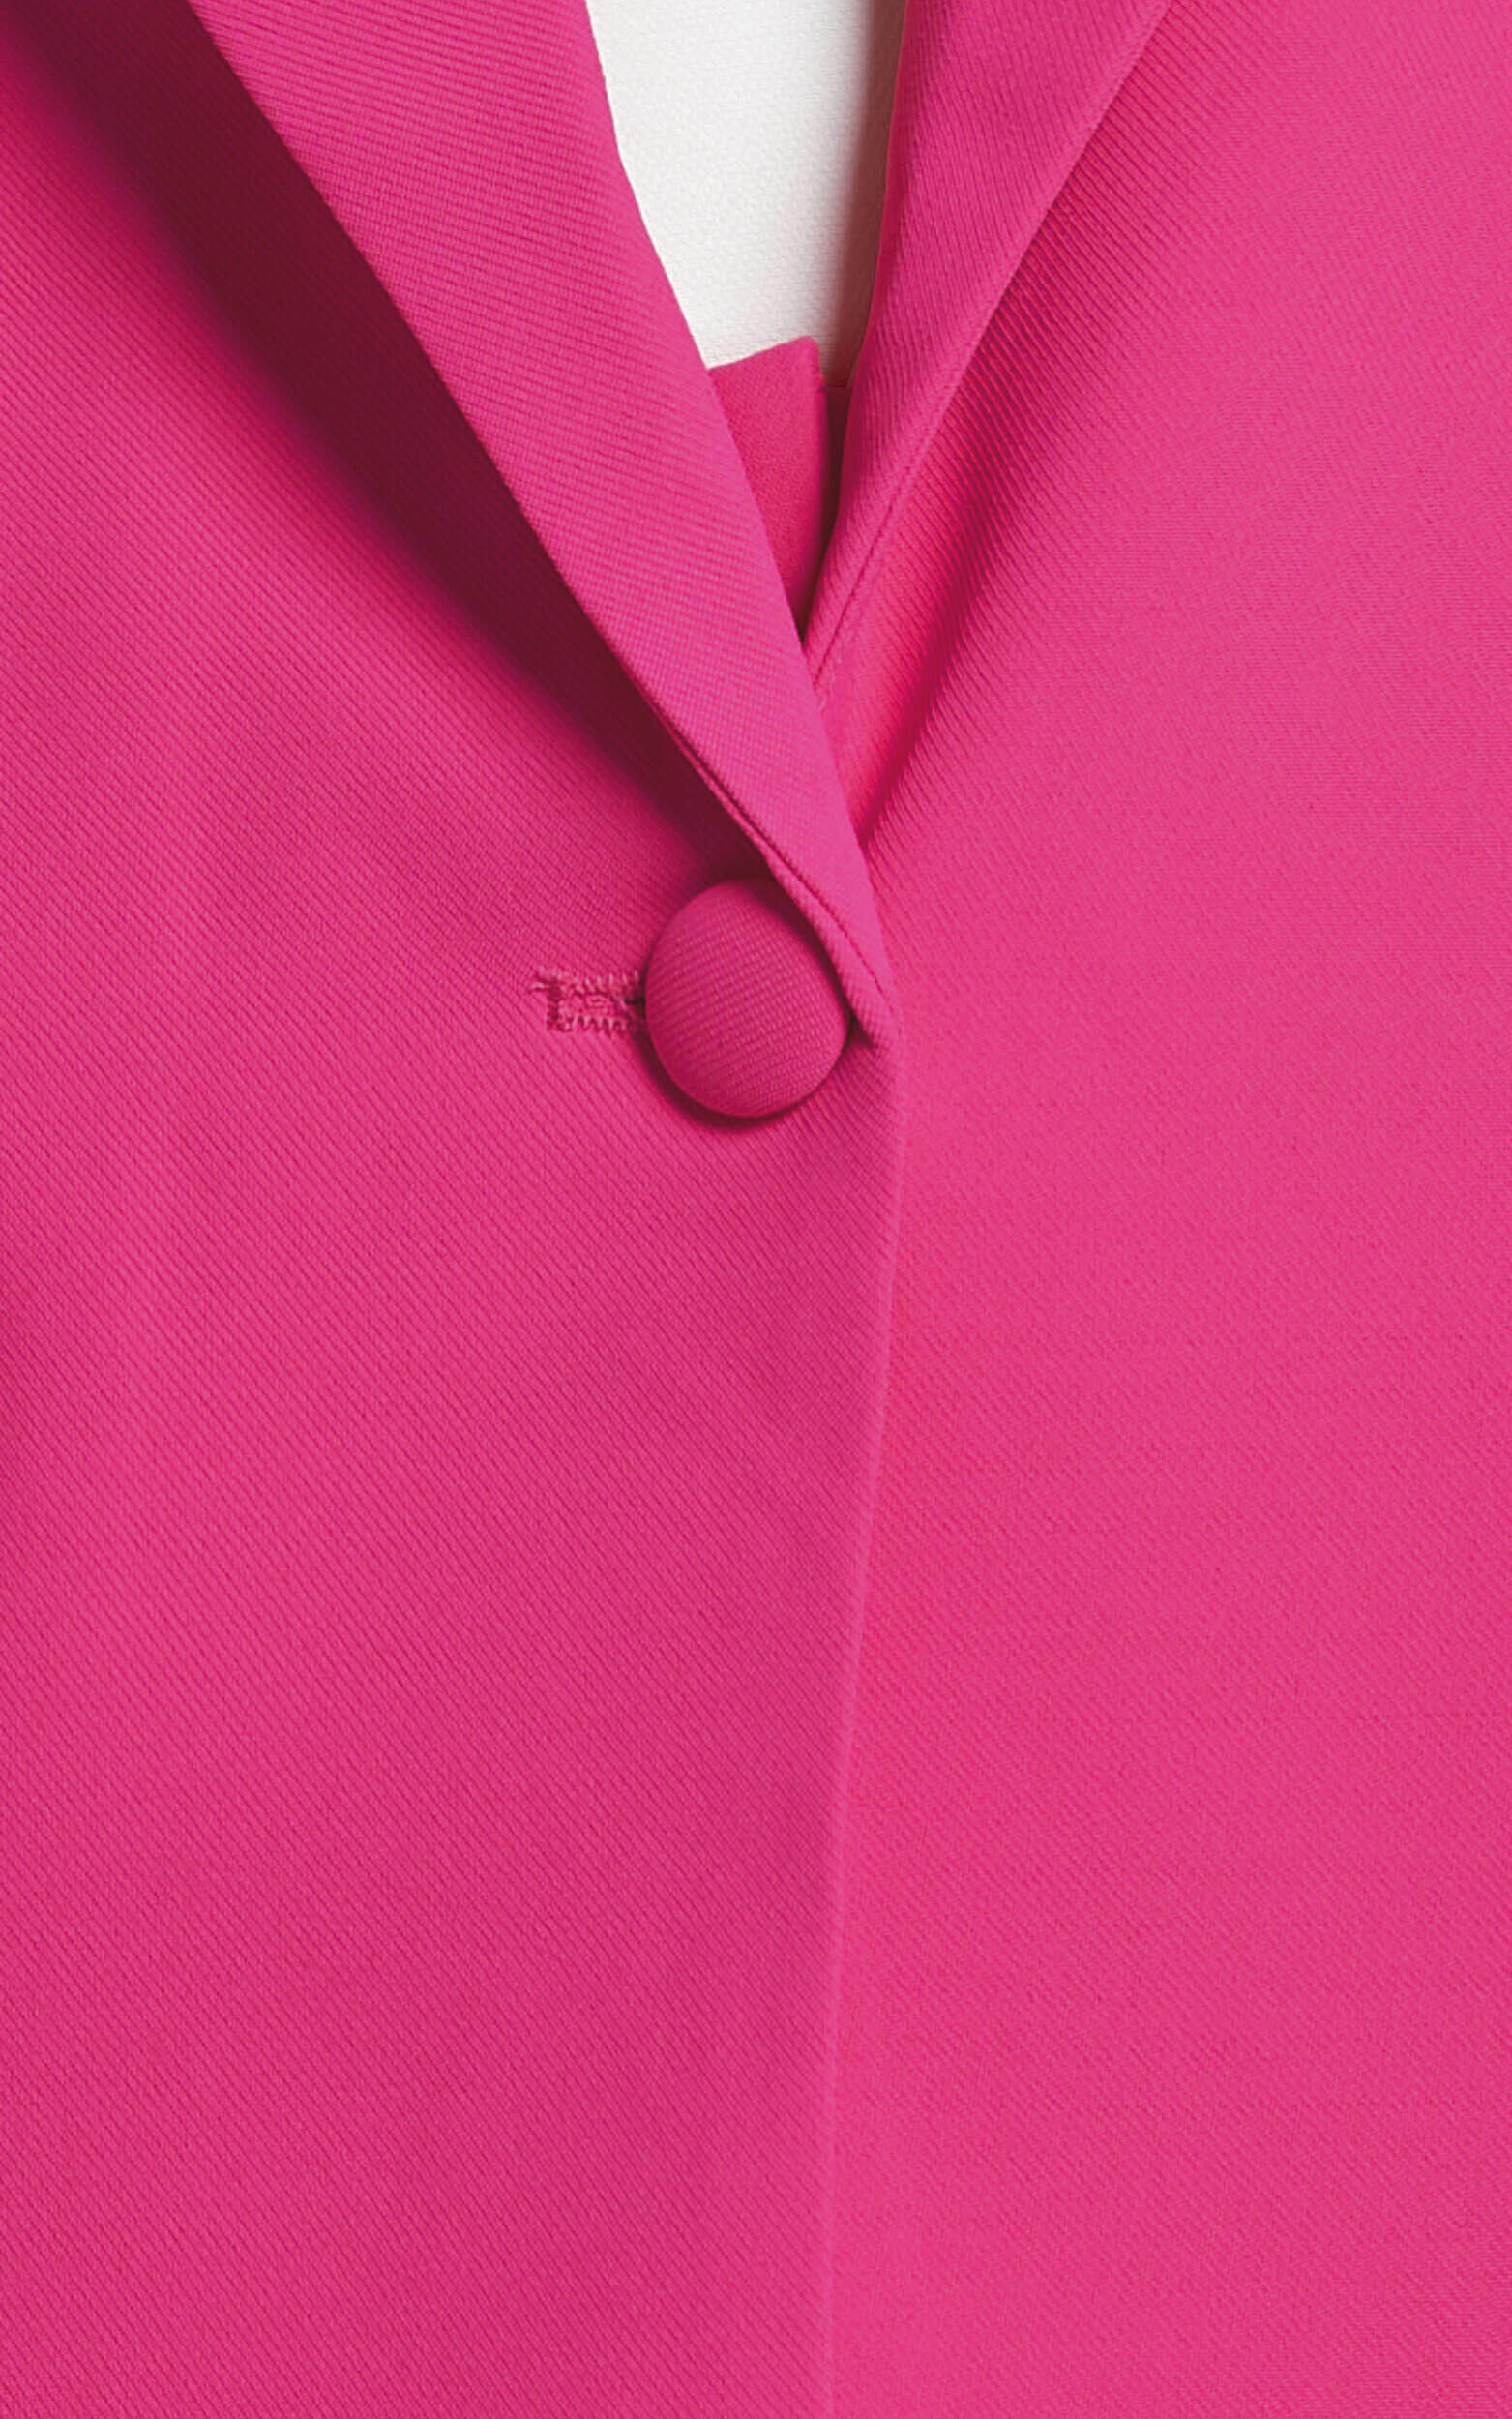 Michelle Oversized Plunge Neck Button Up Blazer in Pink | Showpo USA